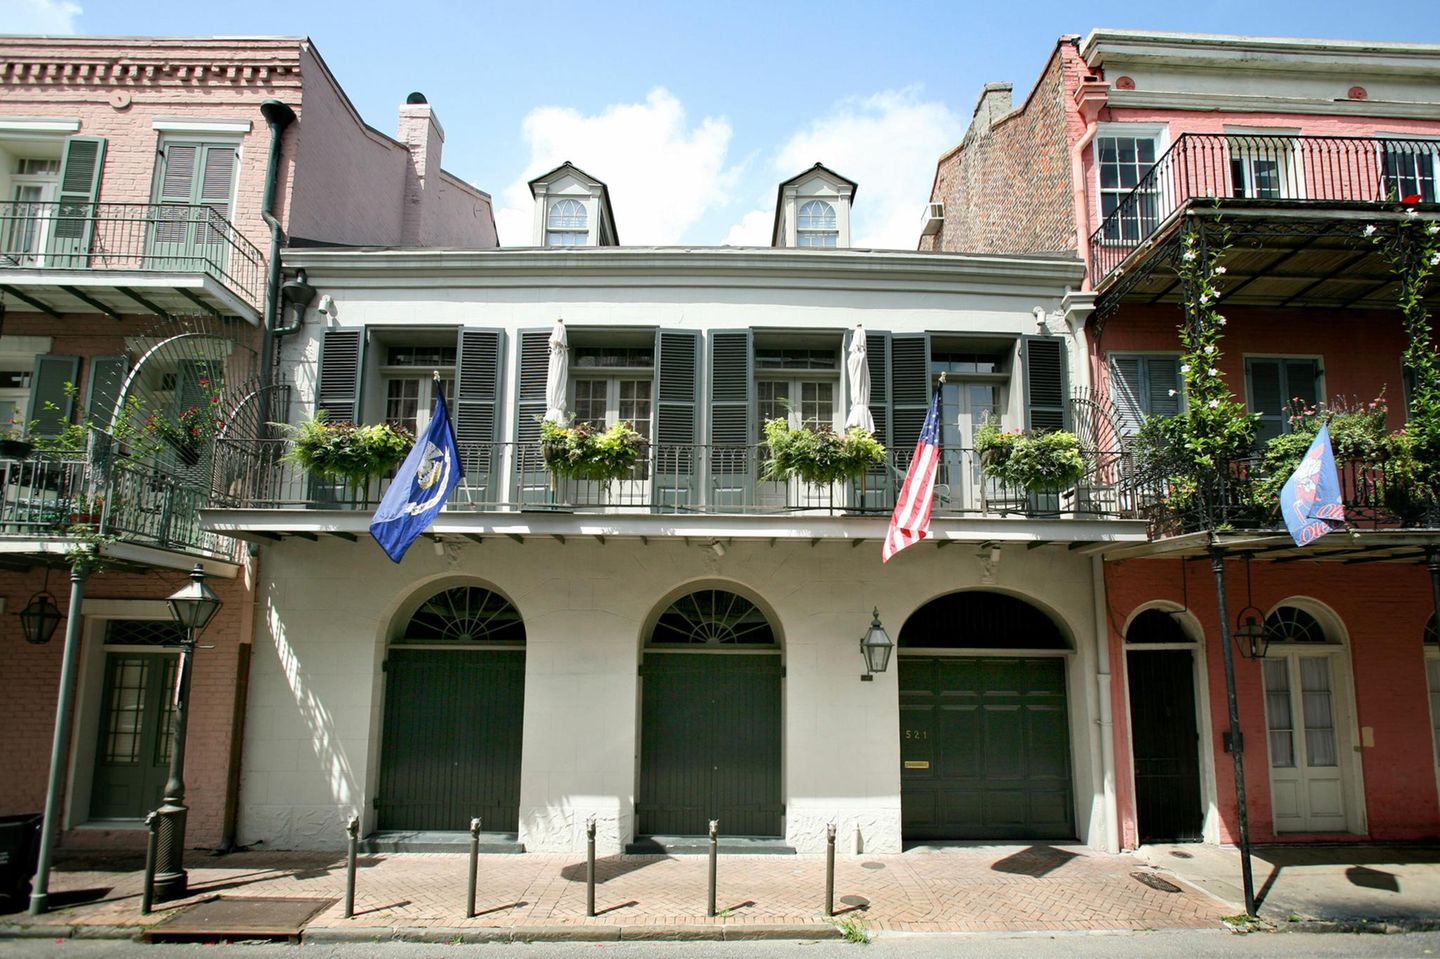 Angelina Jolie und Brad Pitt  Brangelina verkaufen ihr historisches Herrenhaus im französischen Viertel von New Orleans. Das Paar erwarb das Haus 2007 für 3,7 Millionen US-Dollar und versucht nun es für 6,5 Millionen wieder zu verkaufen. Das Gebäude ist Baujahr 1830 und besitzt ...